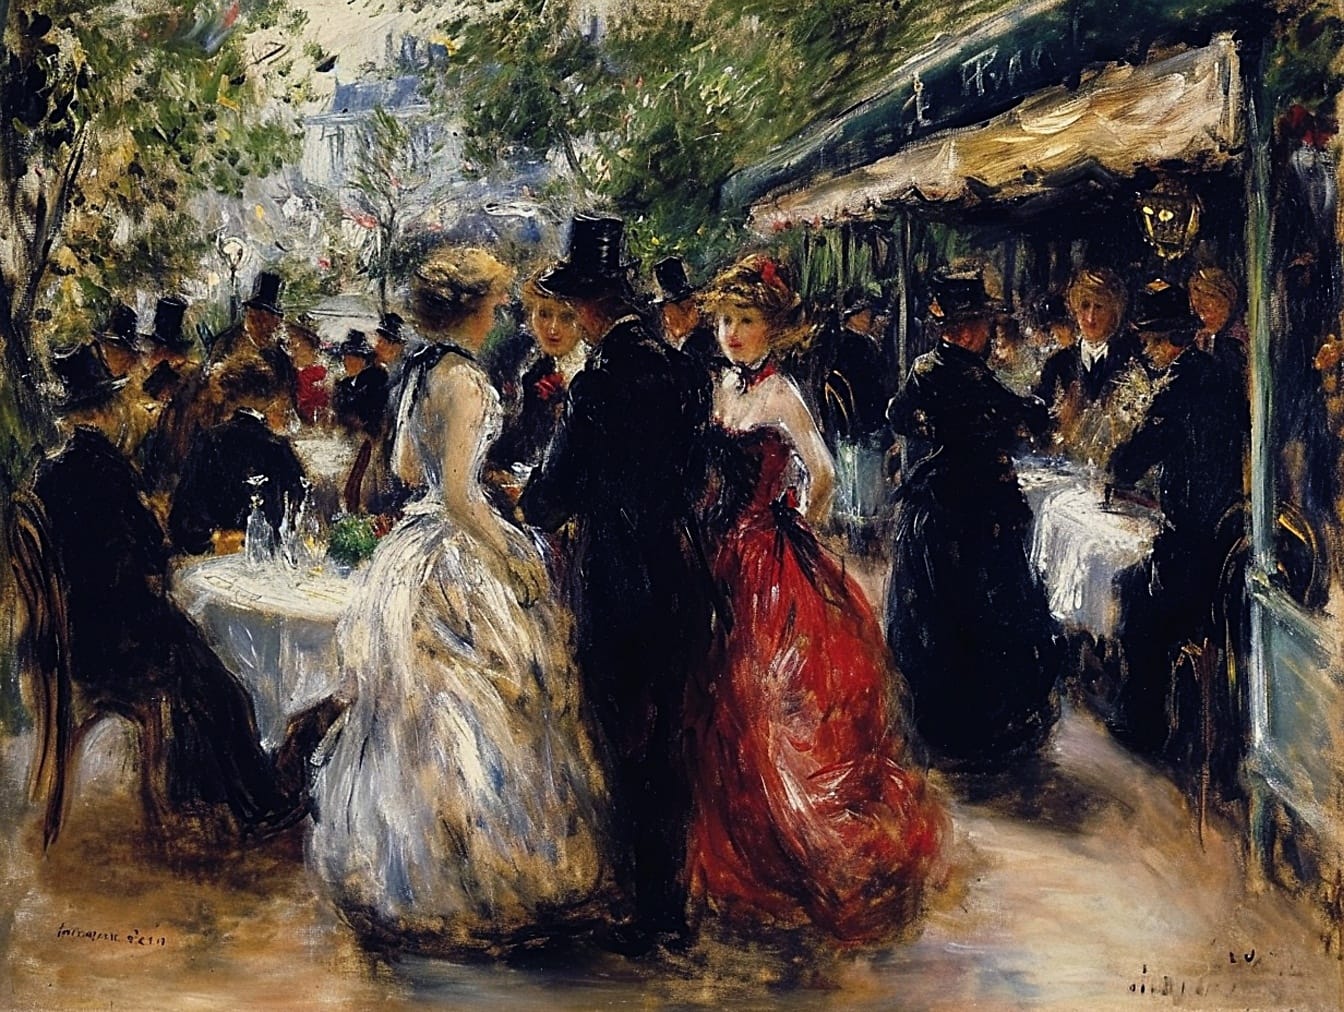 Ulje na platnu grupe ljudi u svečanom ruhu u restoranu s prikazom mode iz 19. stoljeća